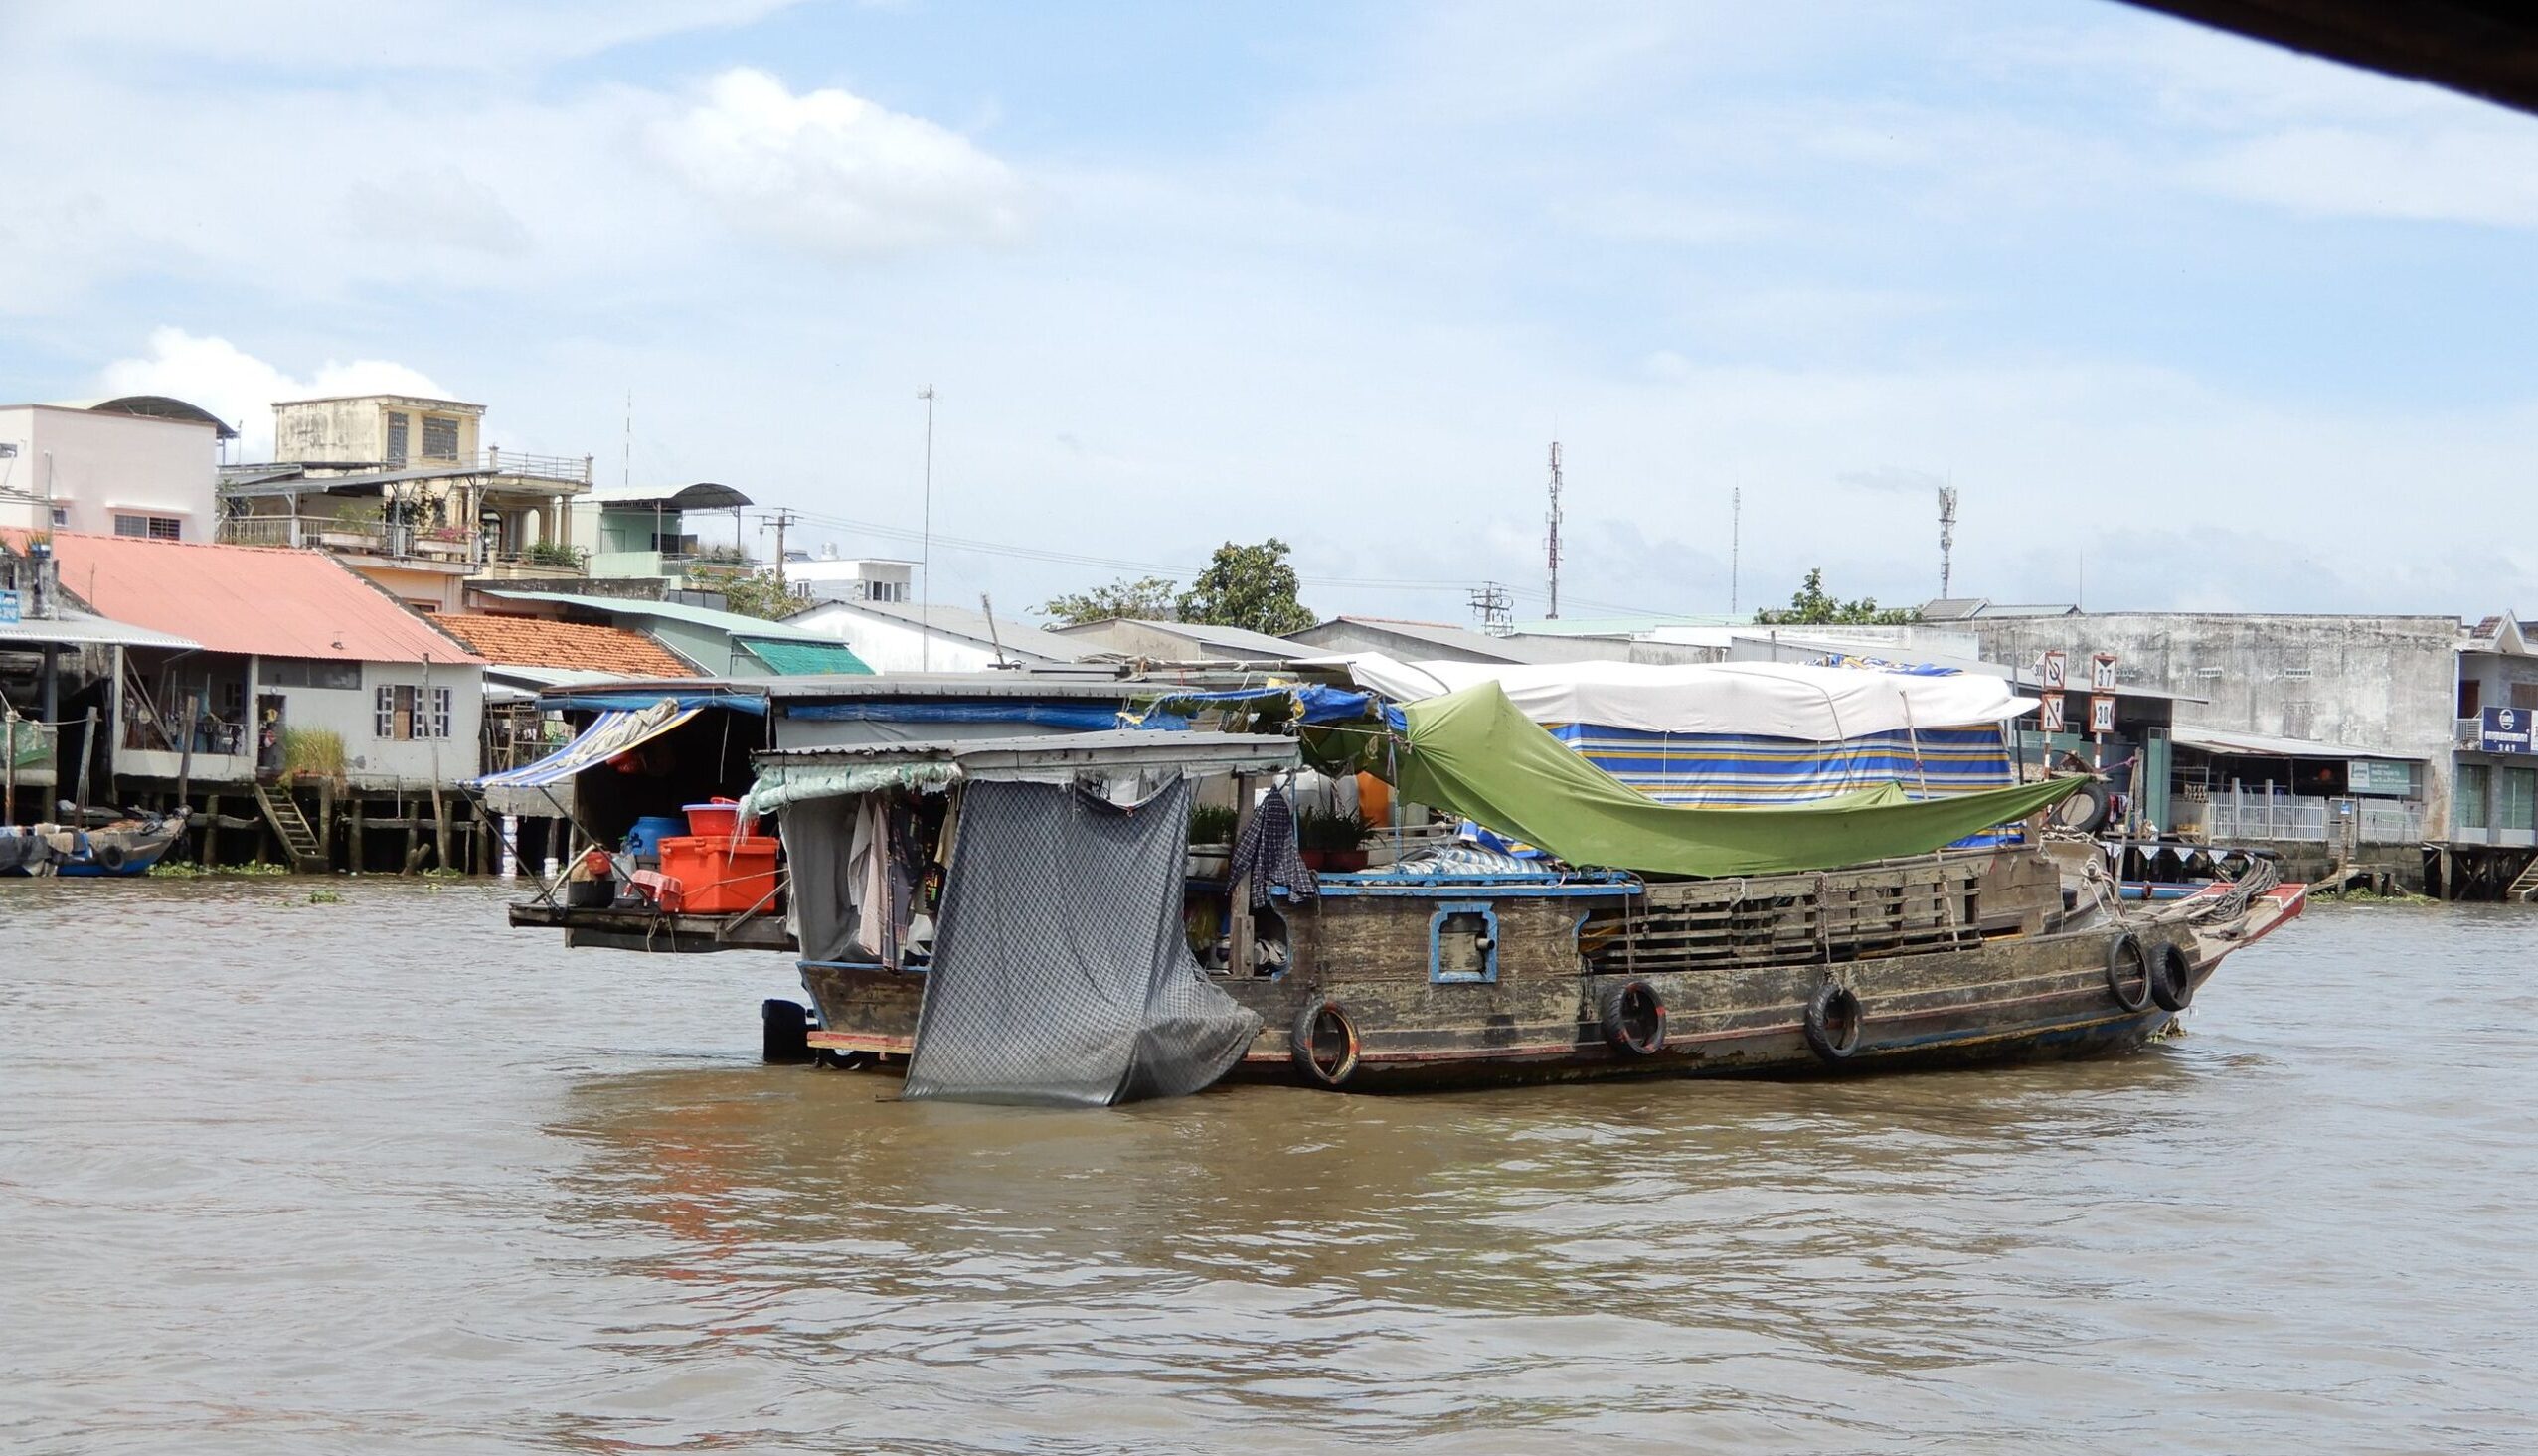 WIETNAM Delta Mekongu czyli życie na wodzie